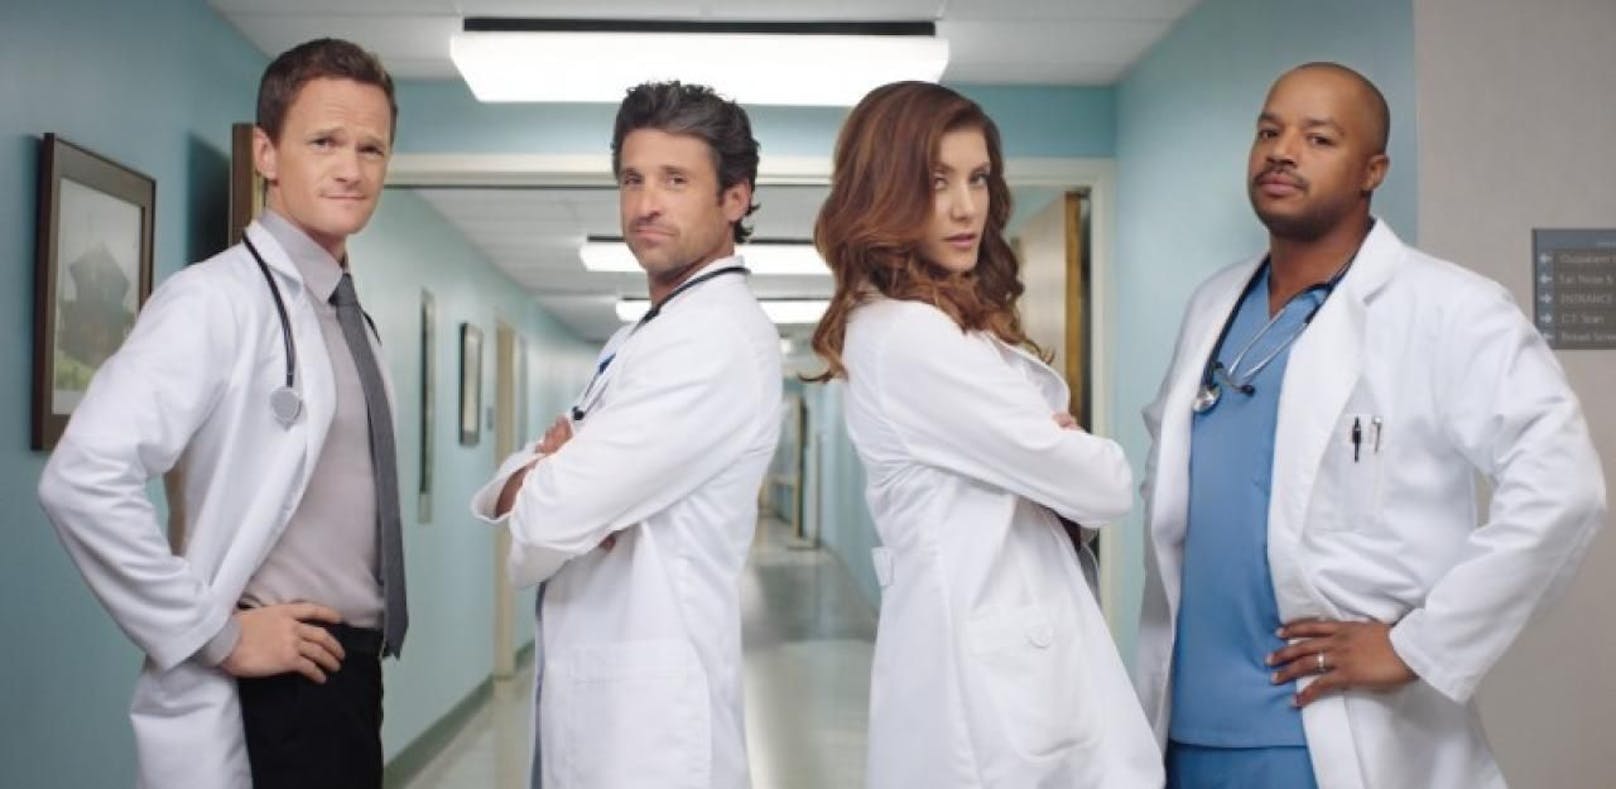 "TV Doctors" empfehlen jährlichen Check-up